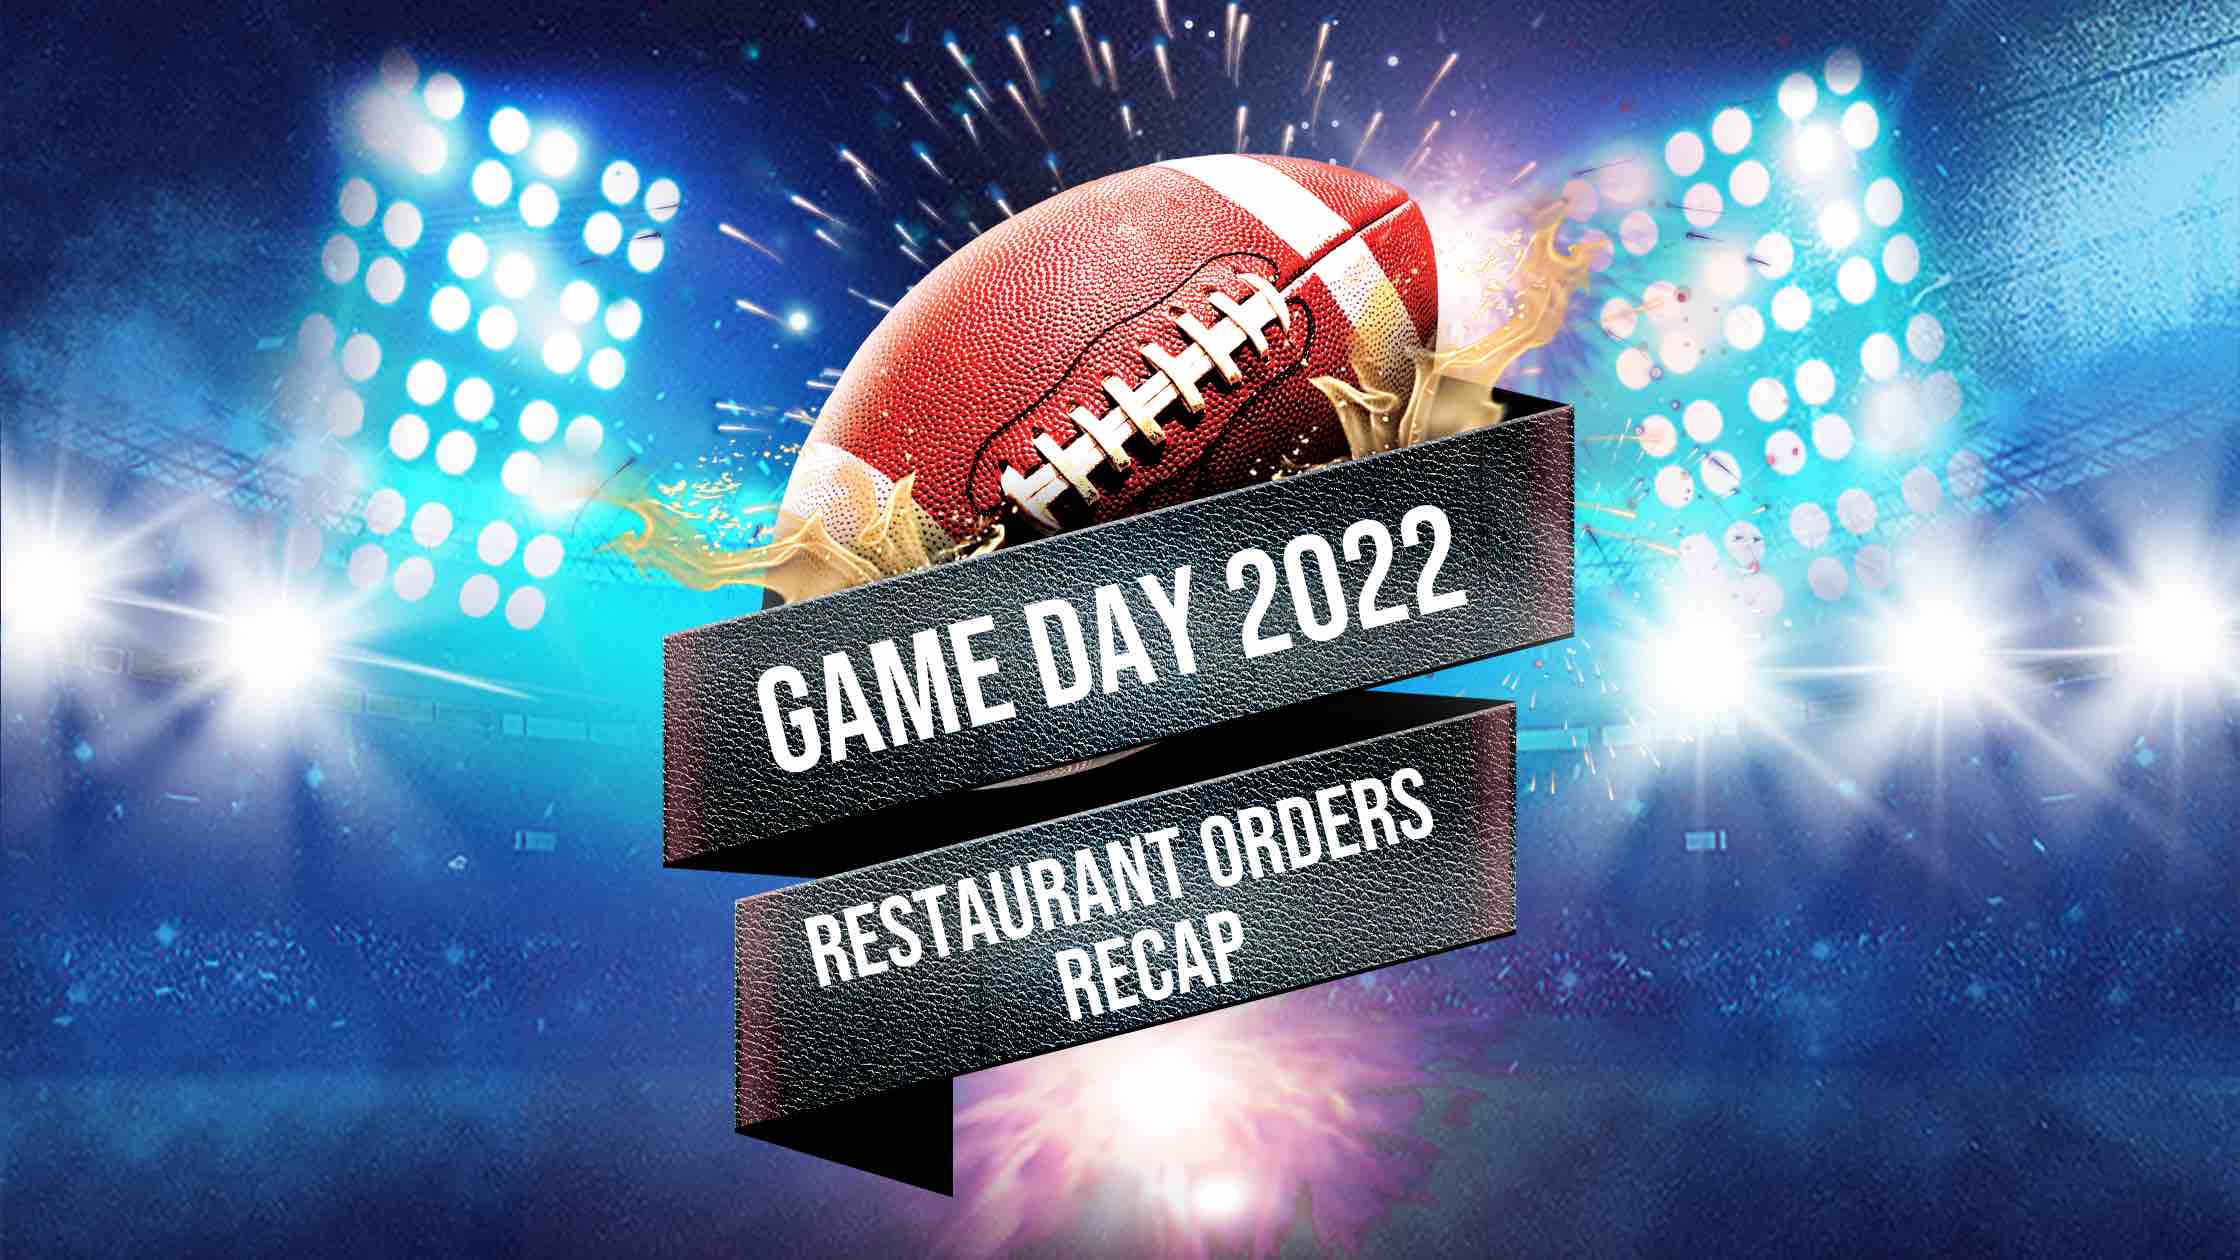 Super Bowl 2022 Restaurant Orders Recap